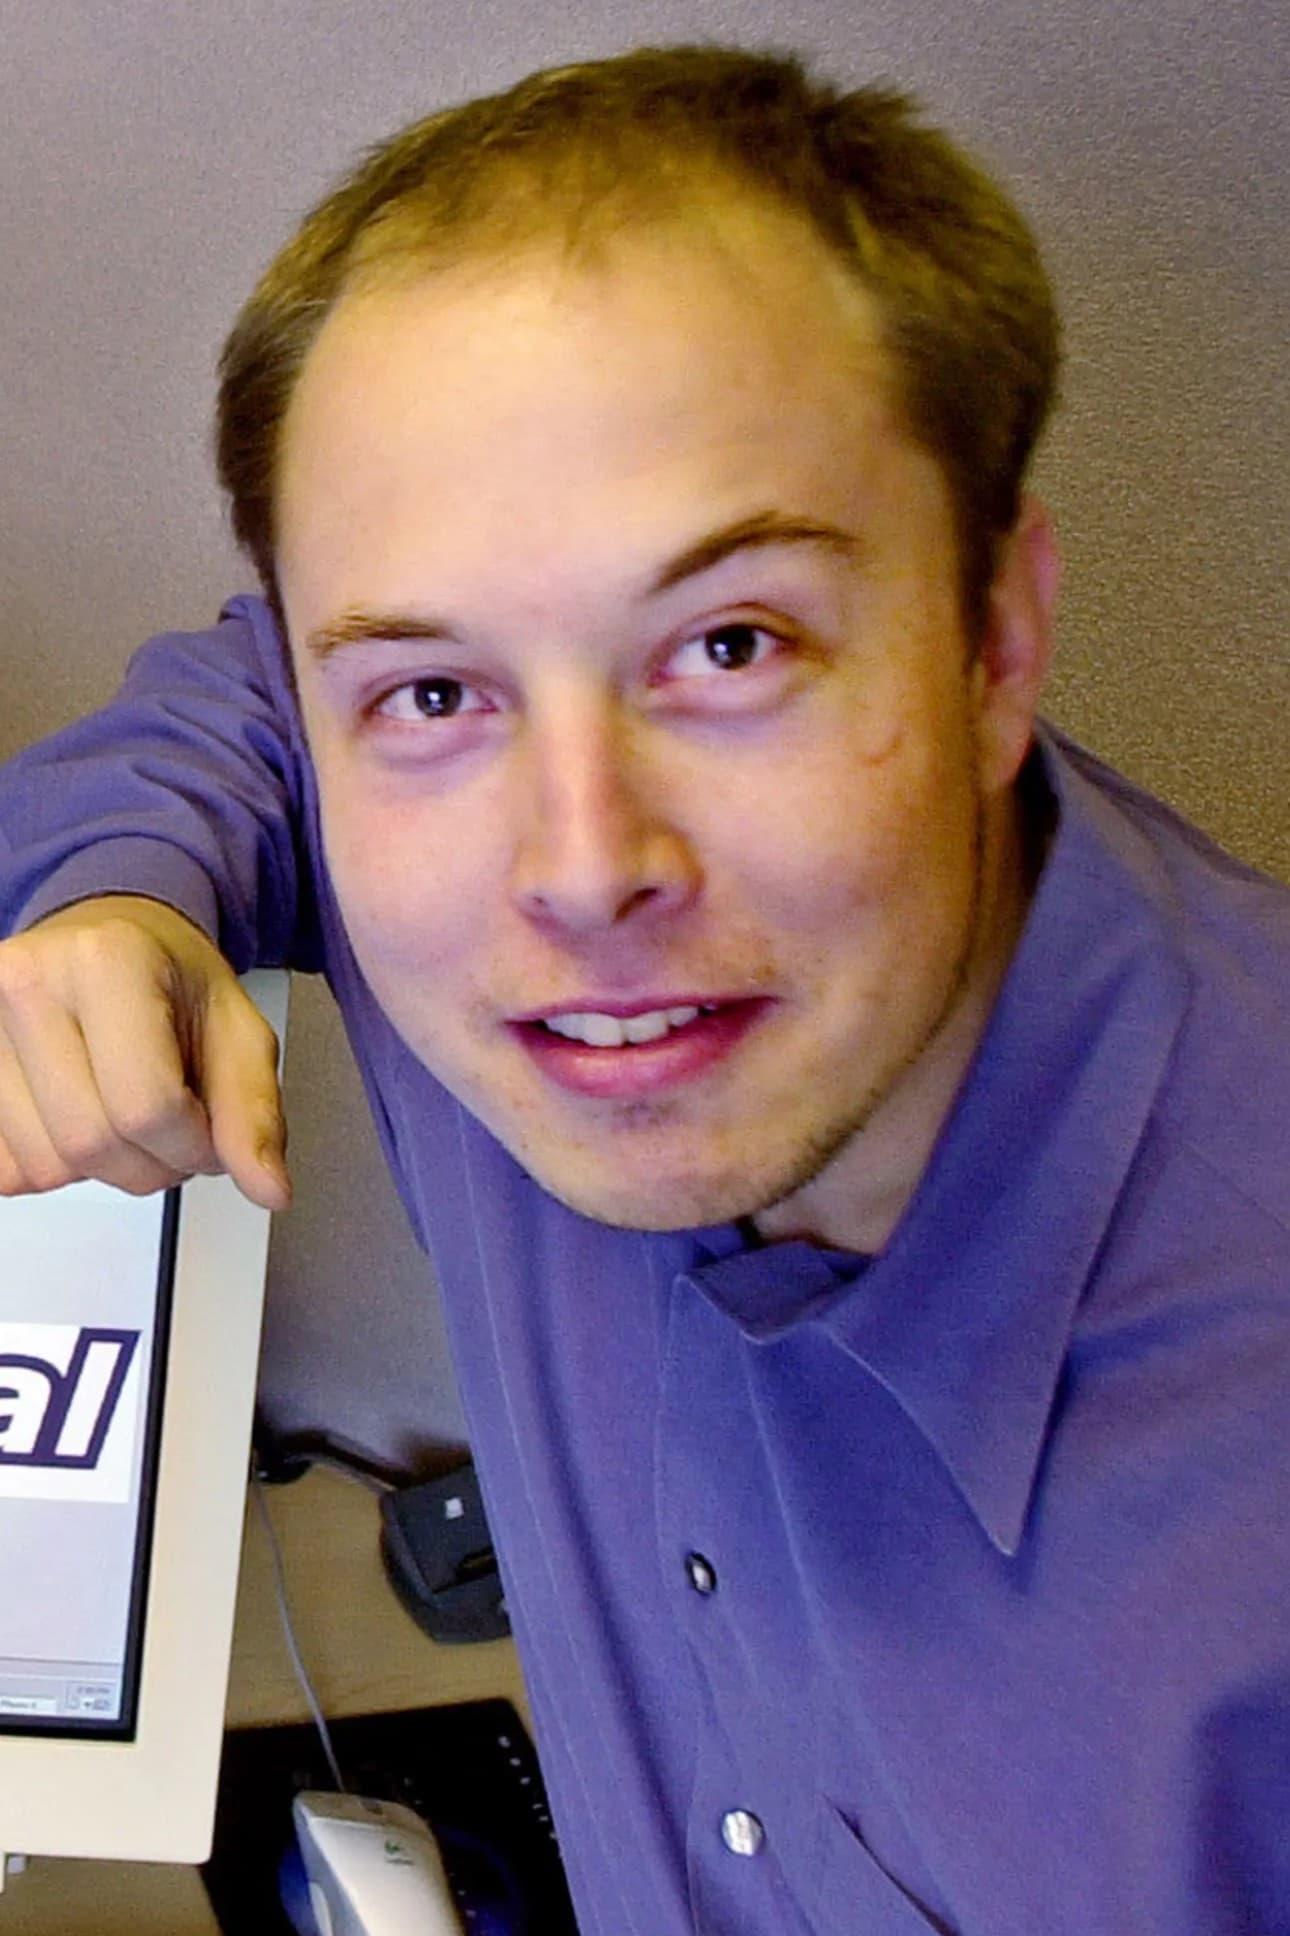 Elon Musk poster